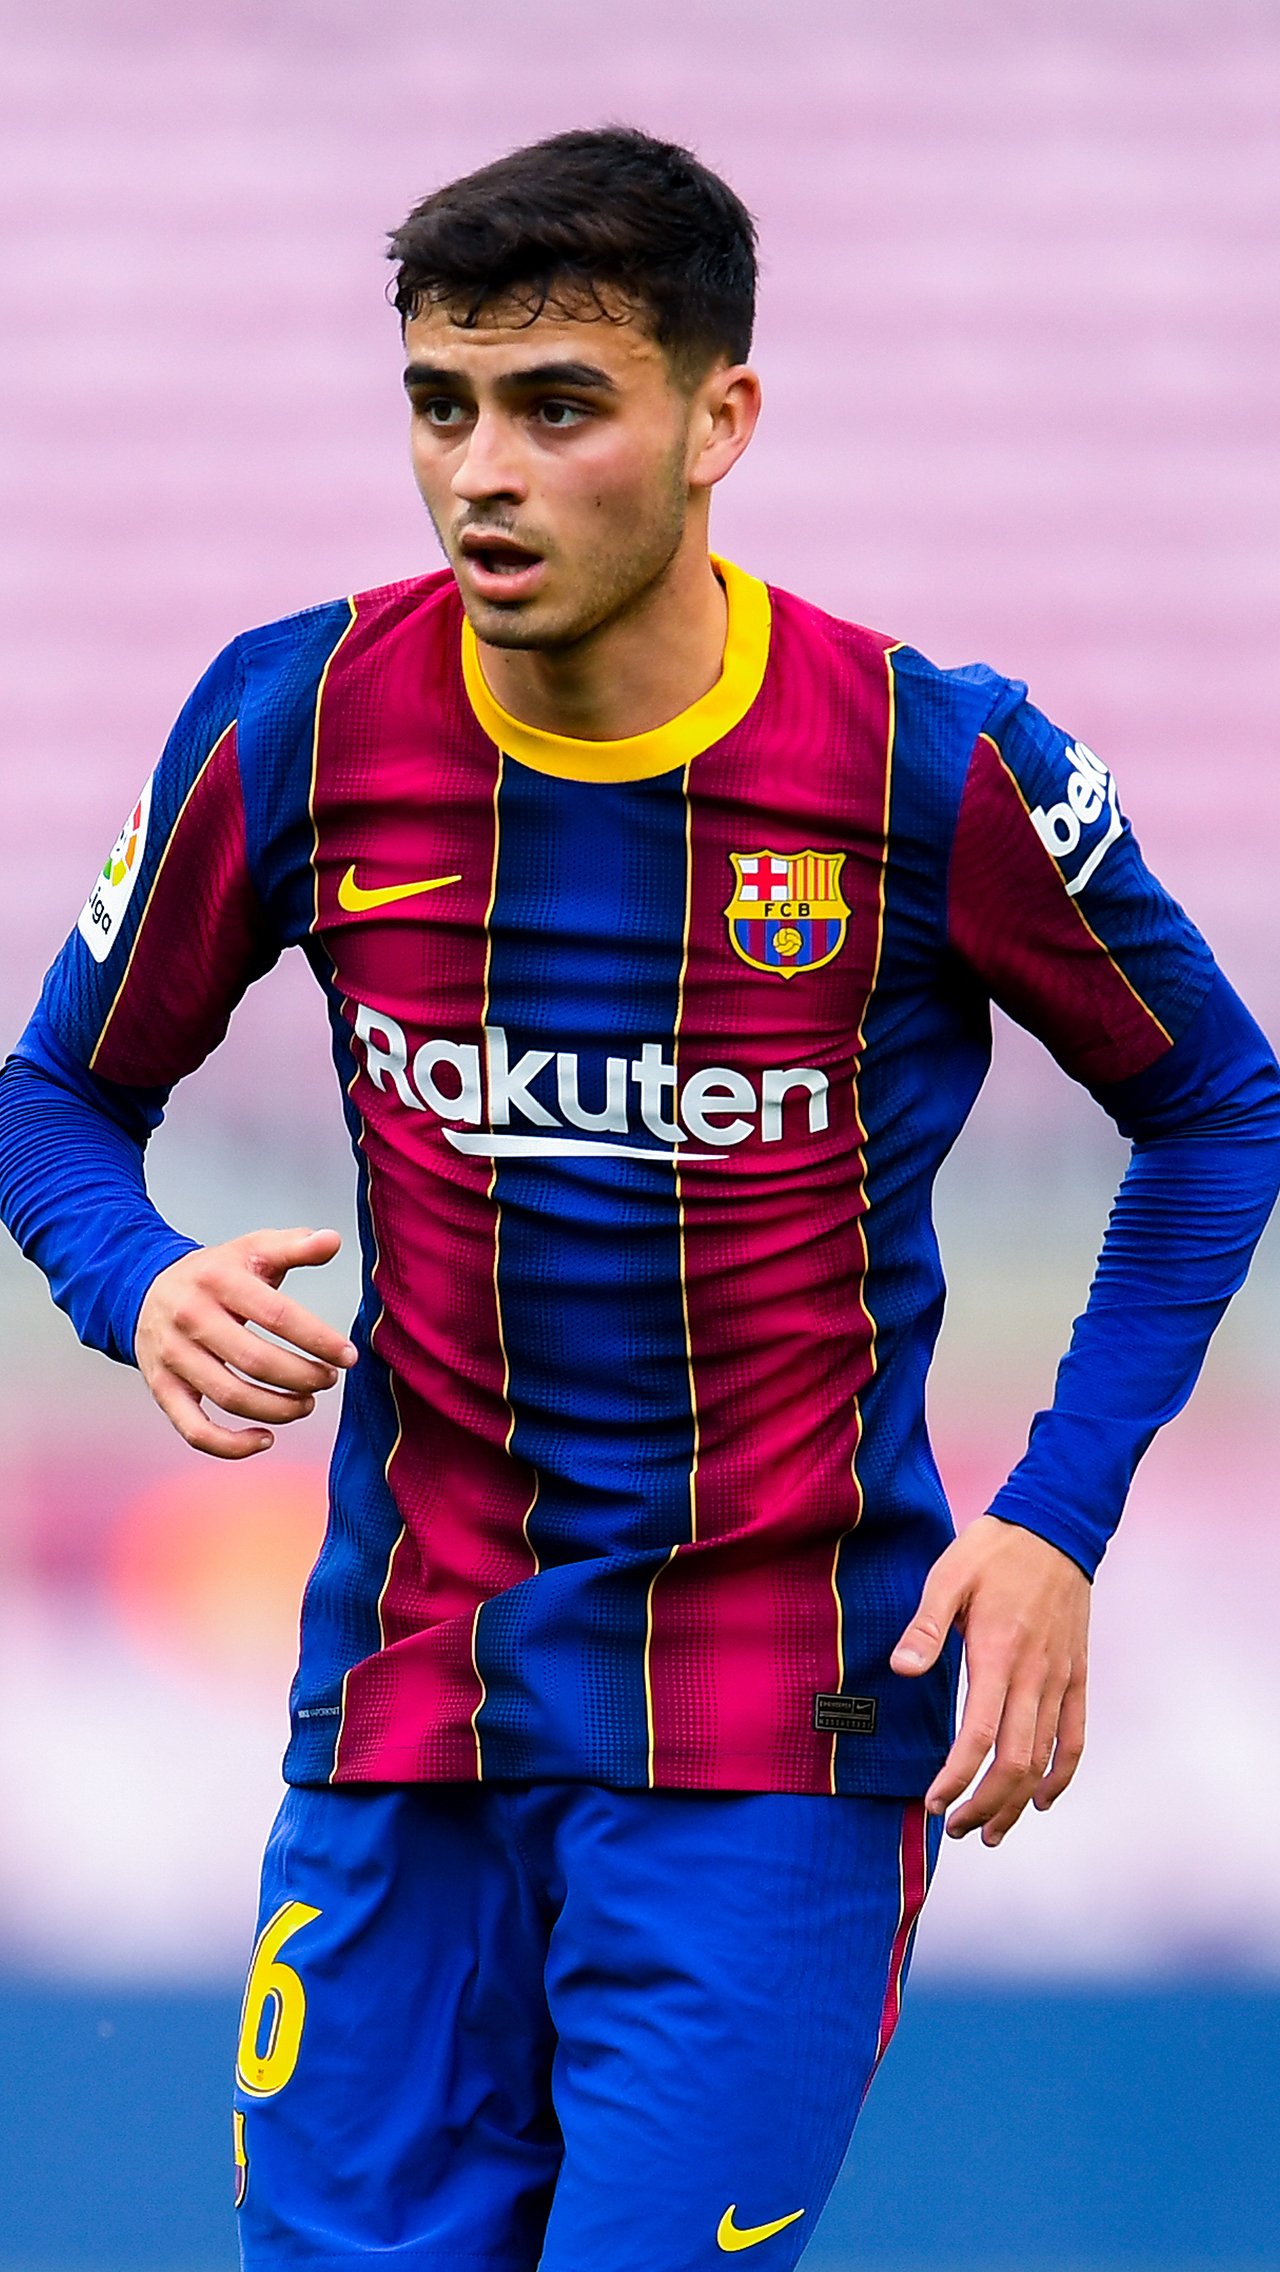 Педри, 19 лет, «Барселона»<br/>
Стоимость: € 80 млн